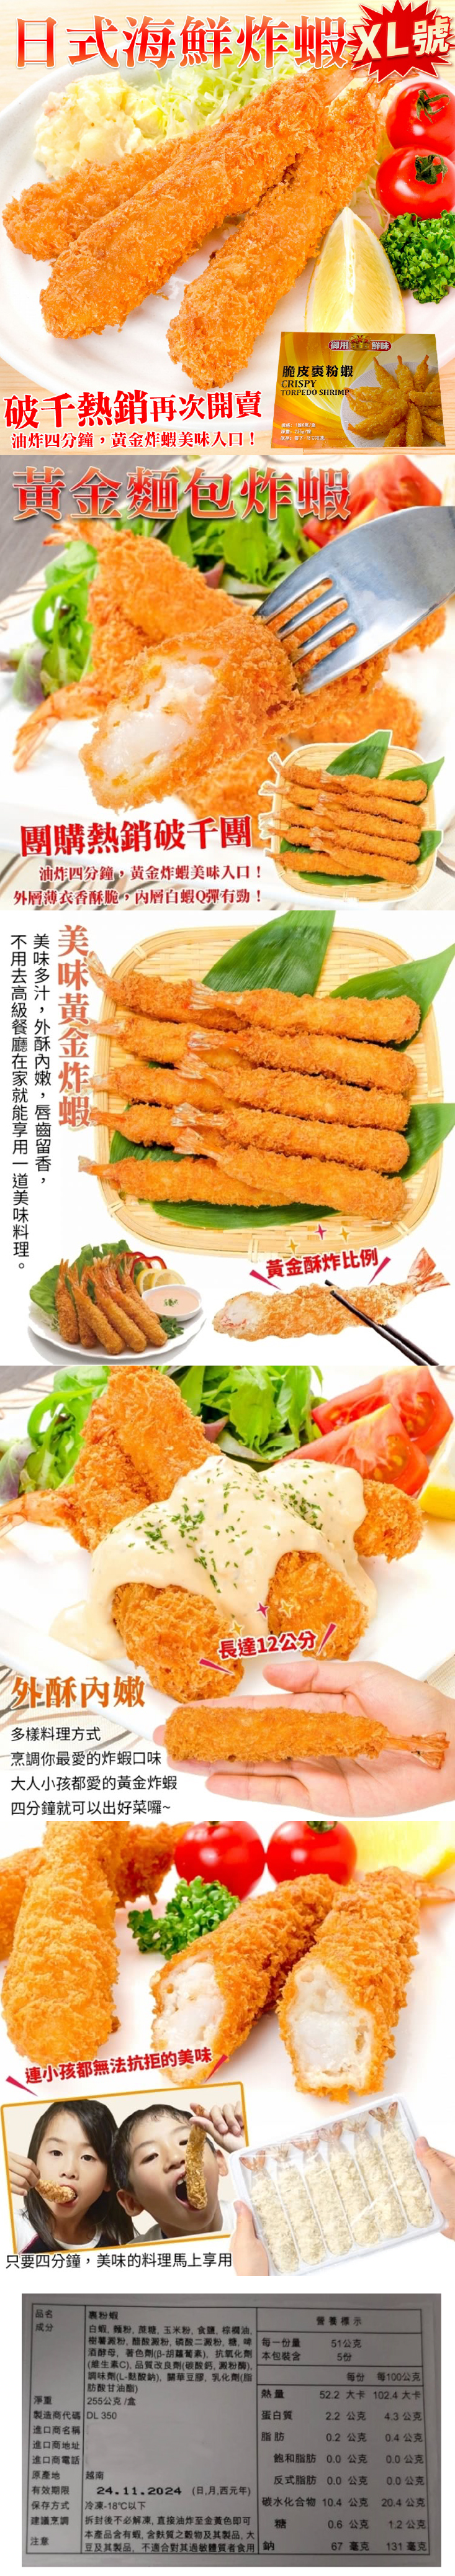 【海肉管家】日式海鮮炸蝦XL號 255g(6尾)/盒